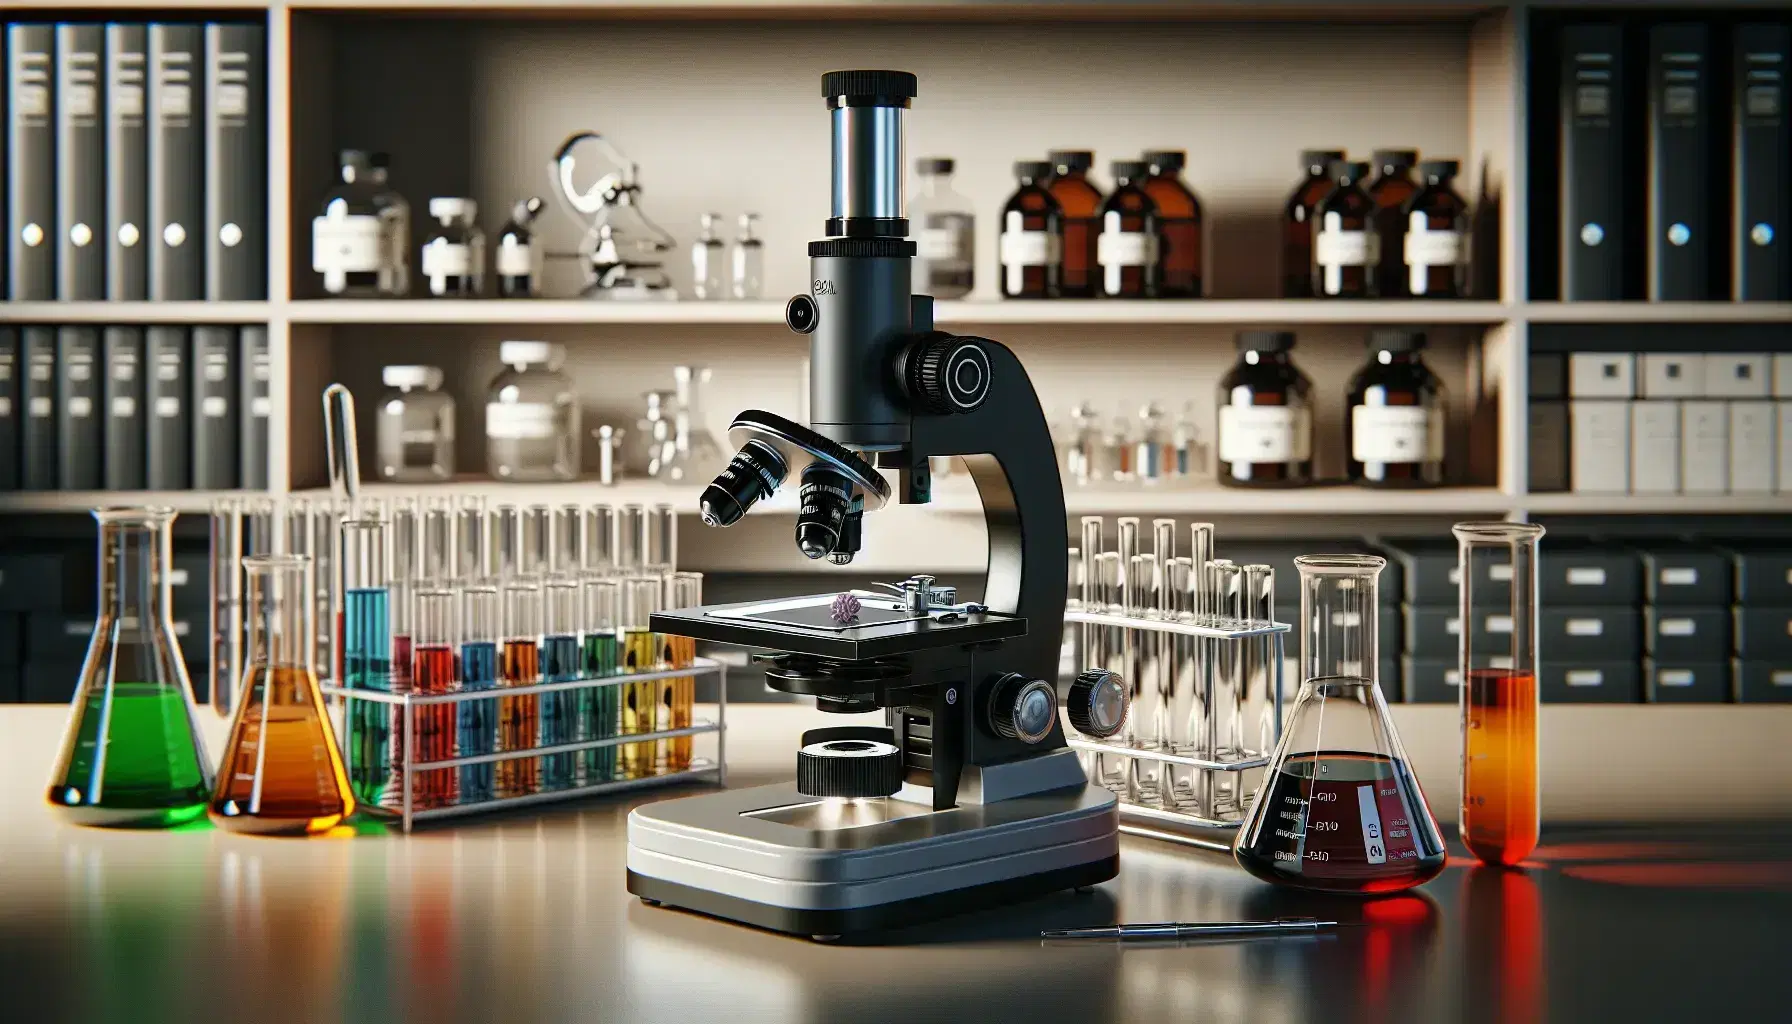 Microscopio compuesto en laboratorio de biología con portaobjetos y tubos de ensayo con líquidos de colores en soporte, estantería con frascos al fondo.